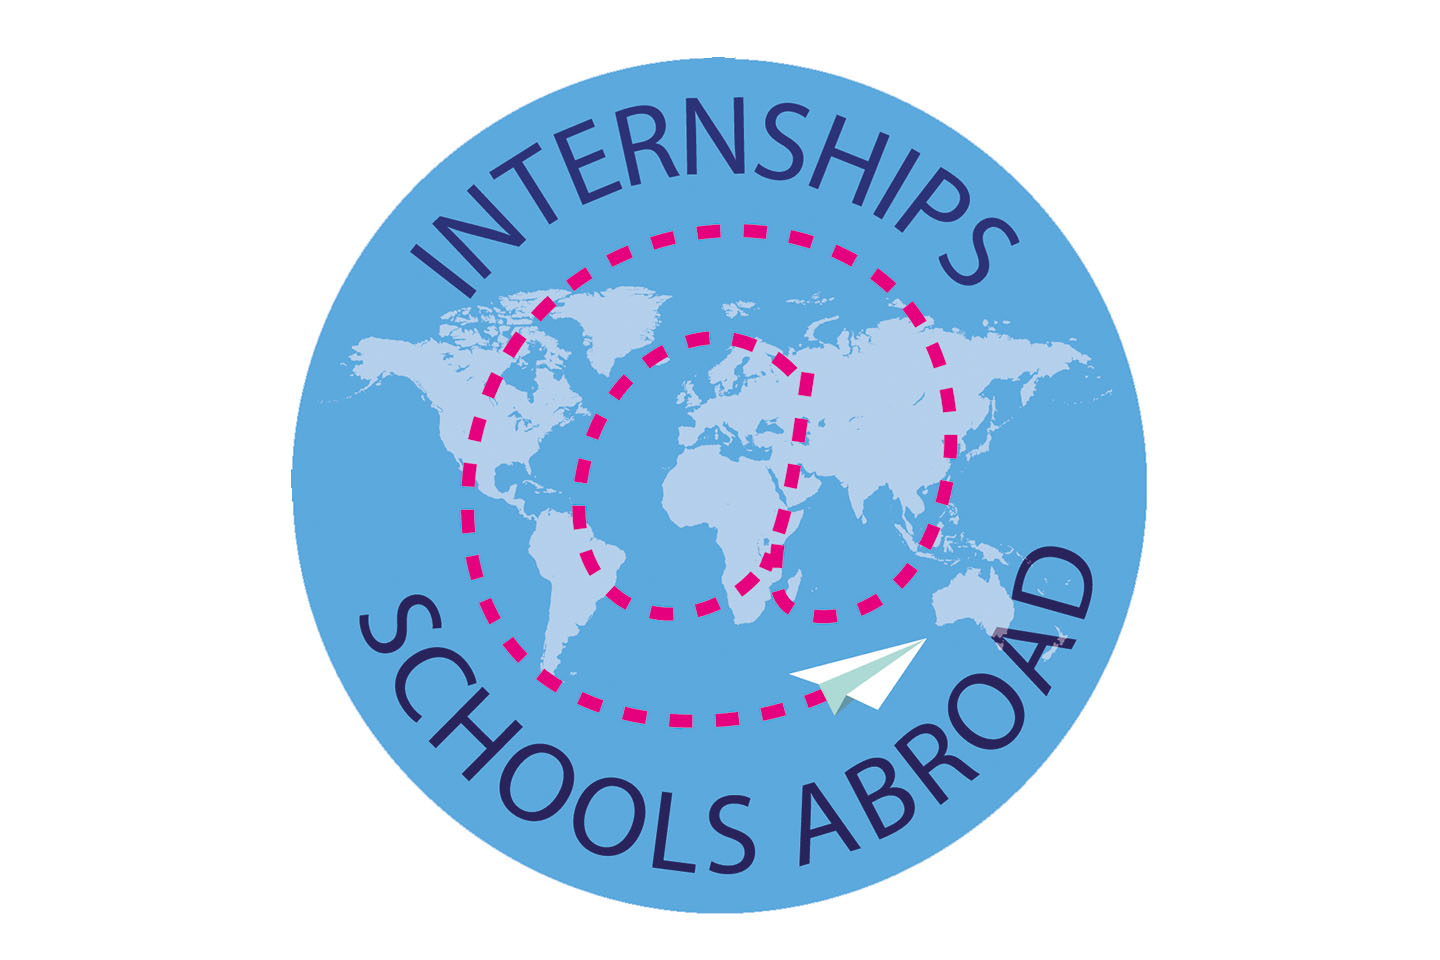 Logo Internships@schoolsabroad